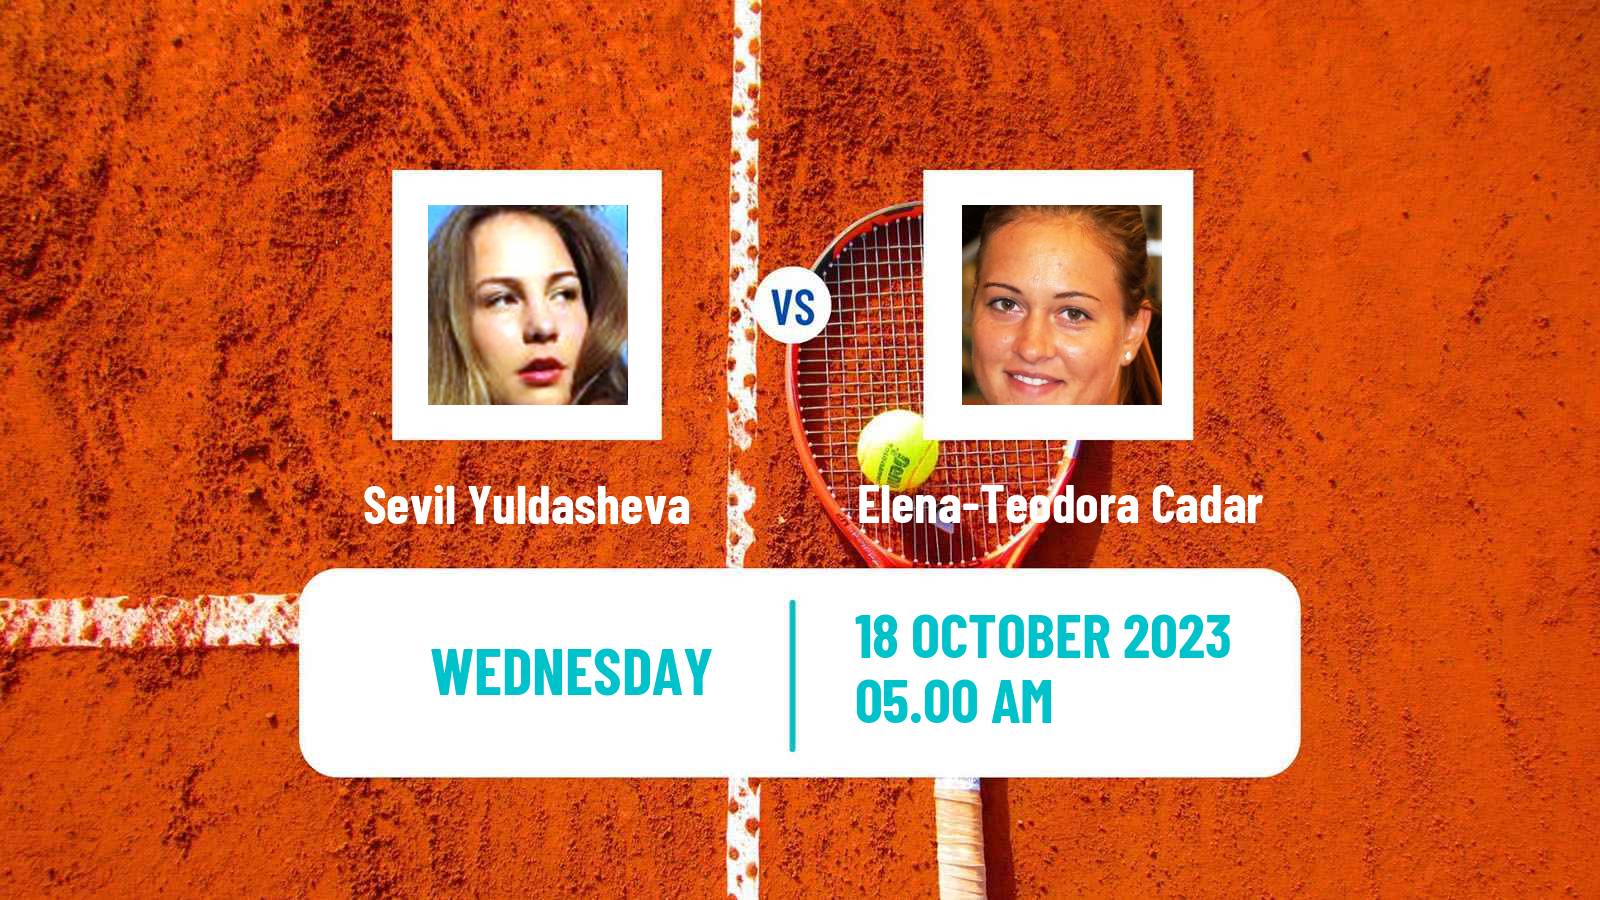 Tennis ITF W15 Sharm Elsheikh 22 Women Sevil Yuldasheva - Elena-Teodora Cadar